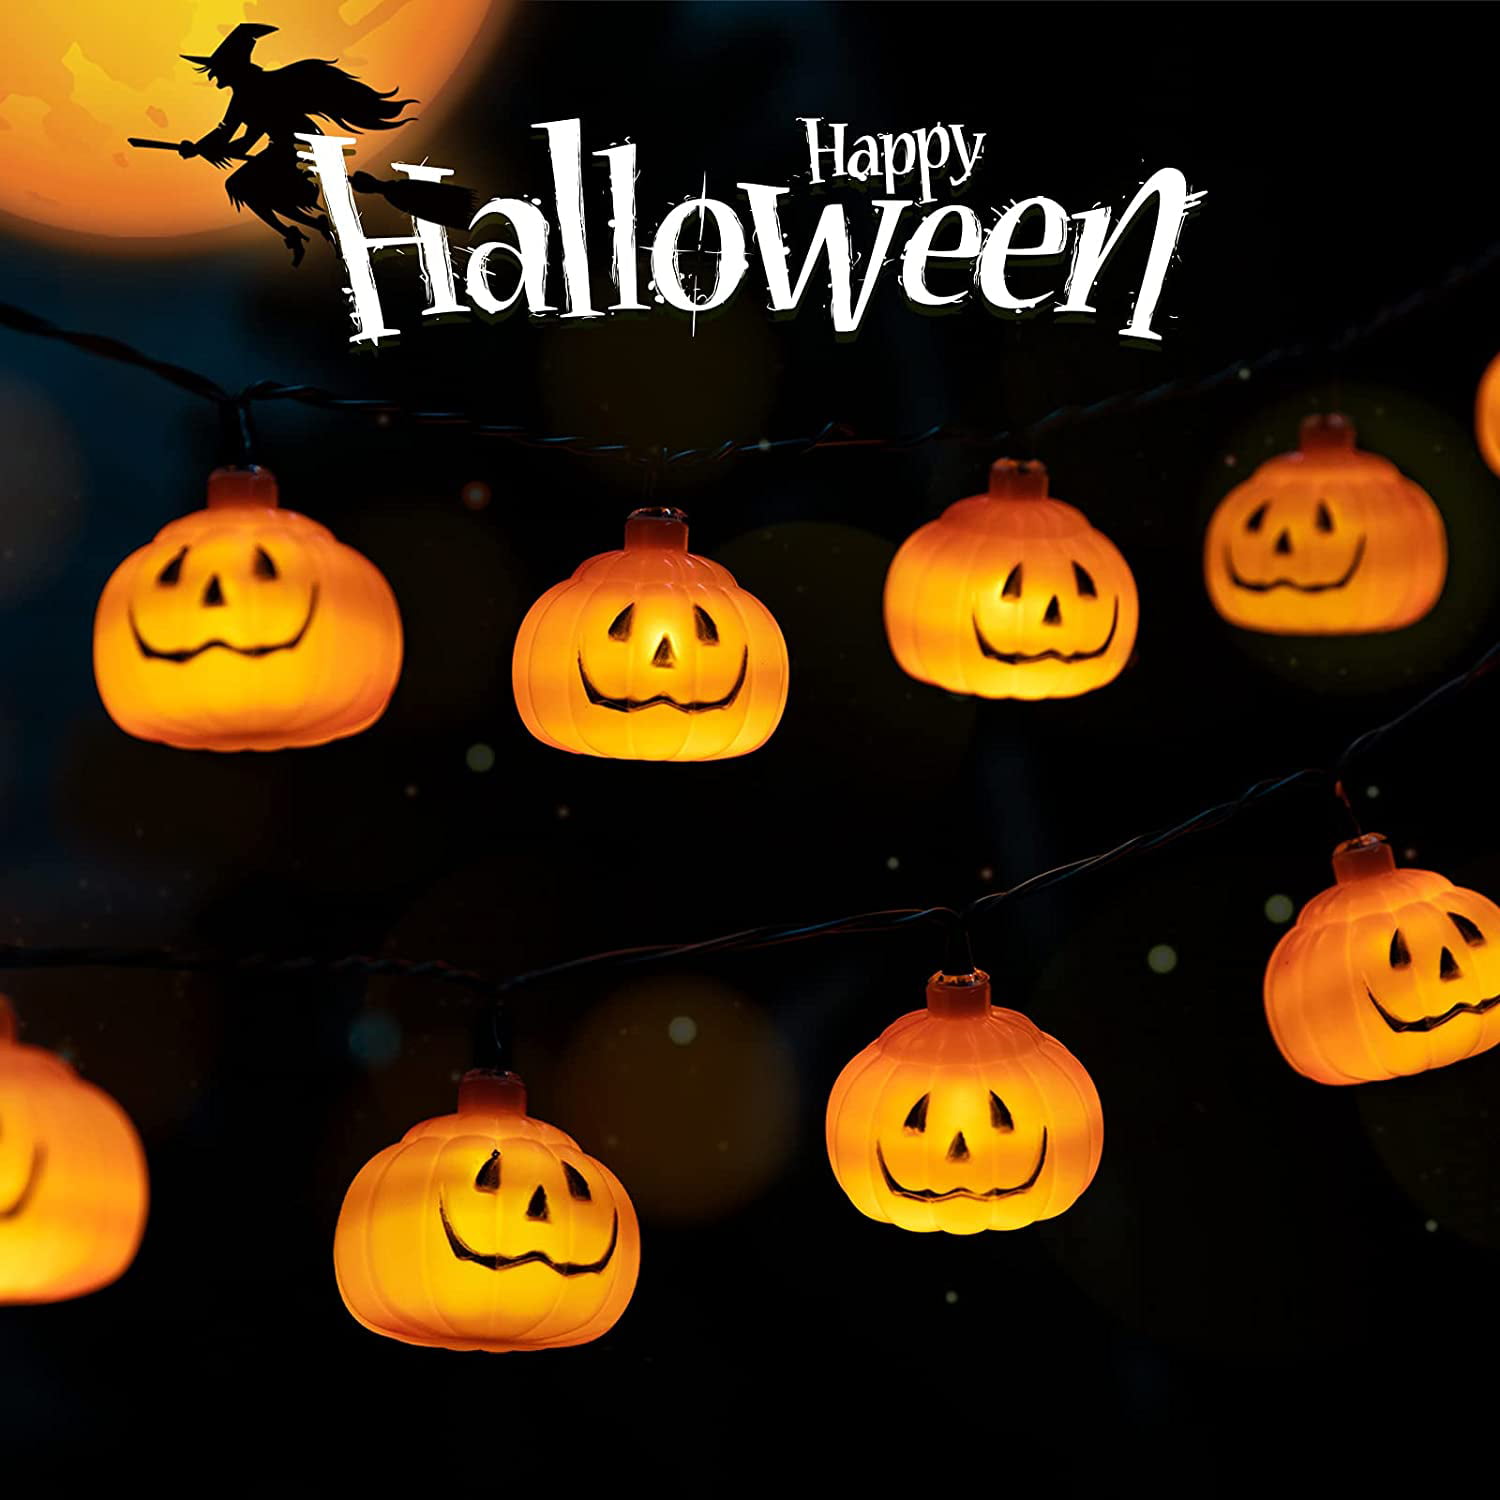 Details about   Halloween string lights musical halloween pumpkin lights motion sensing control 